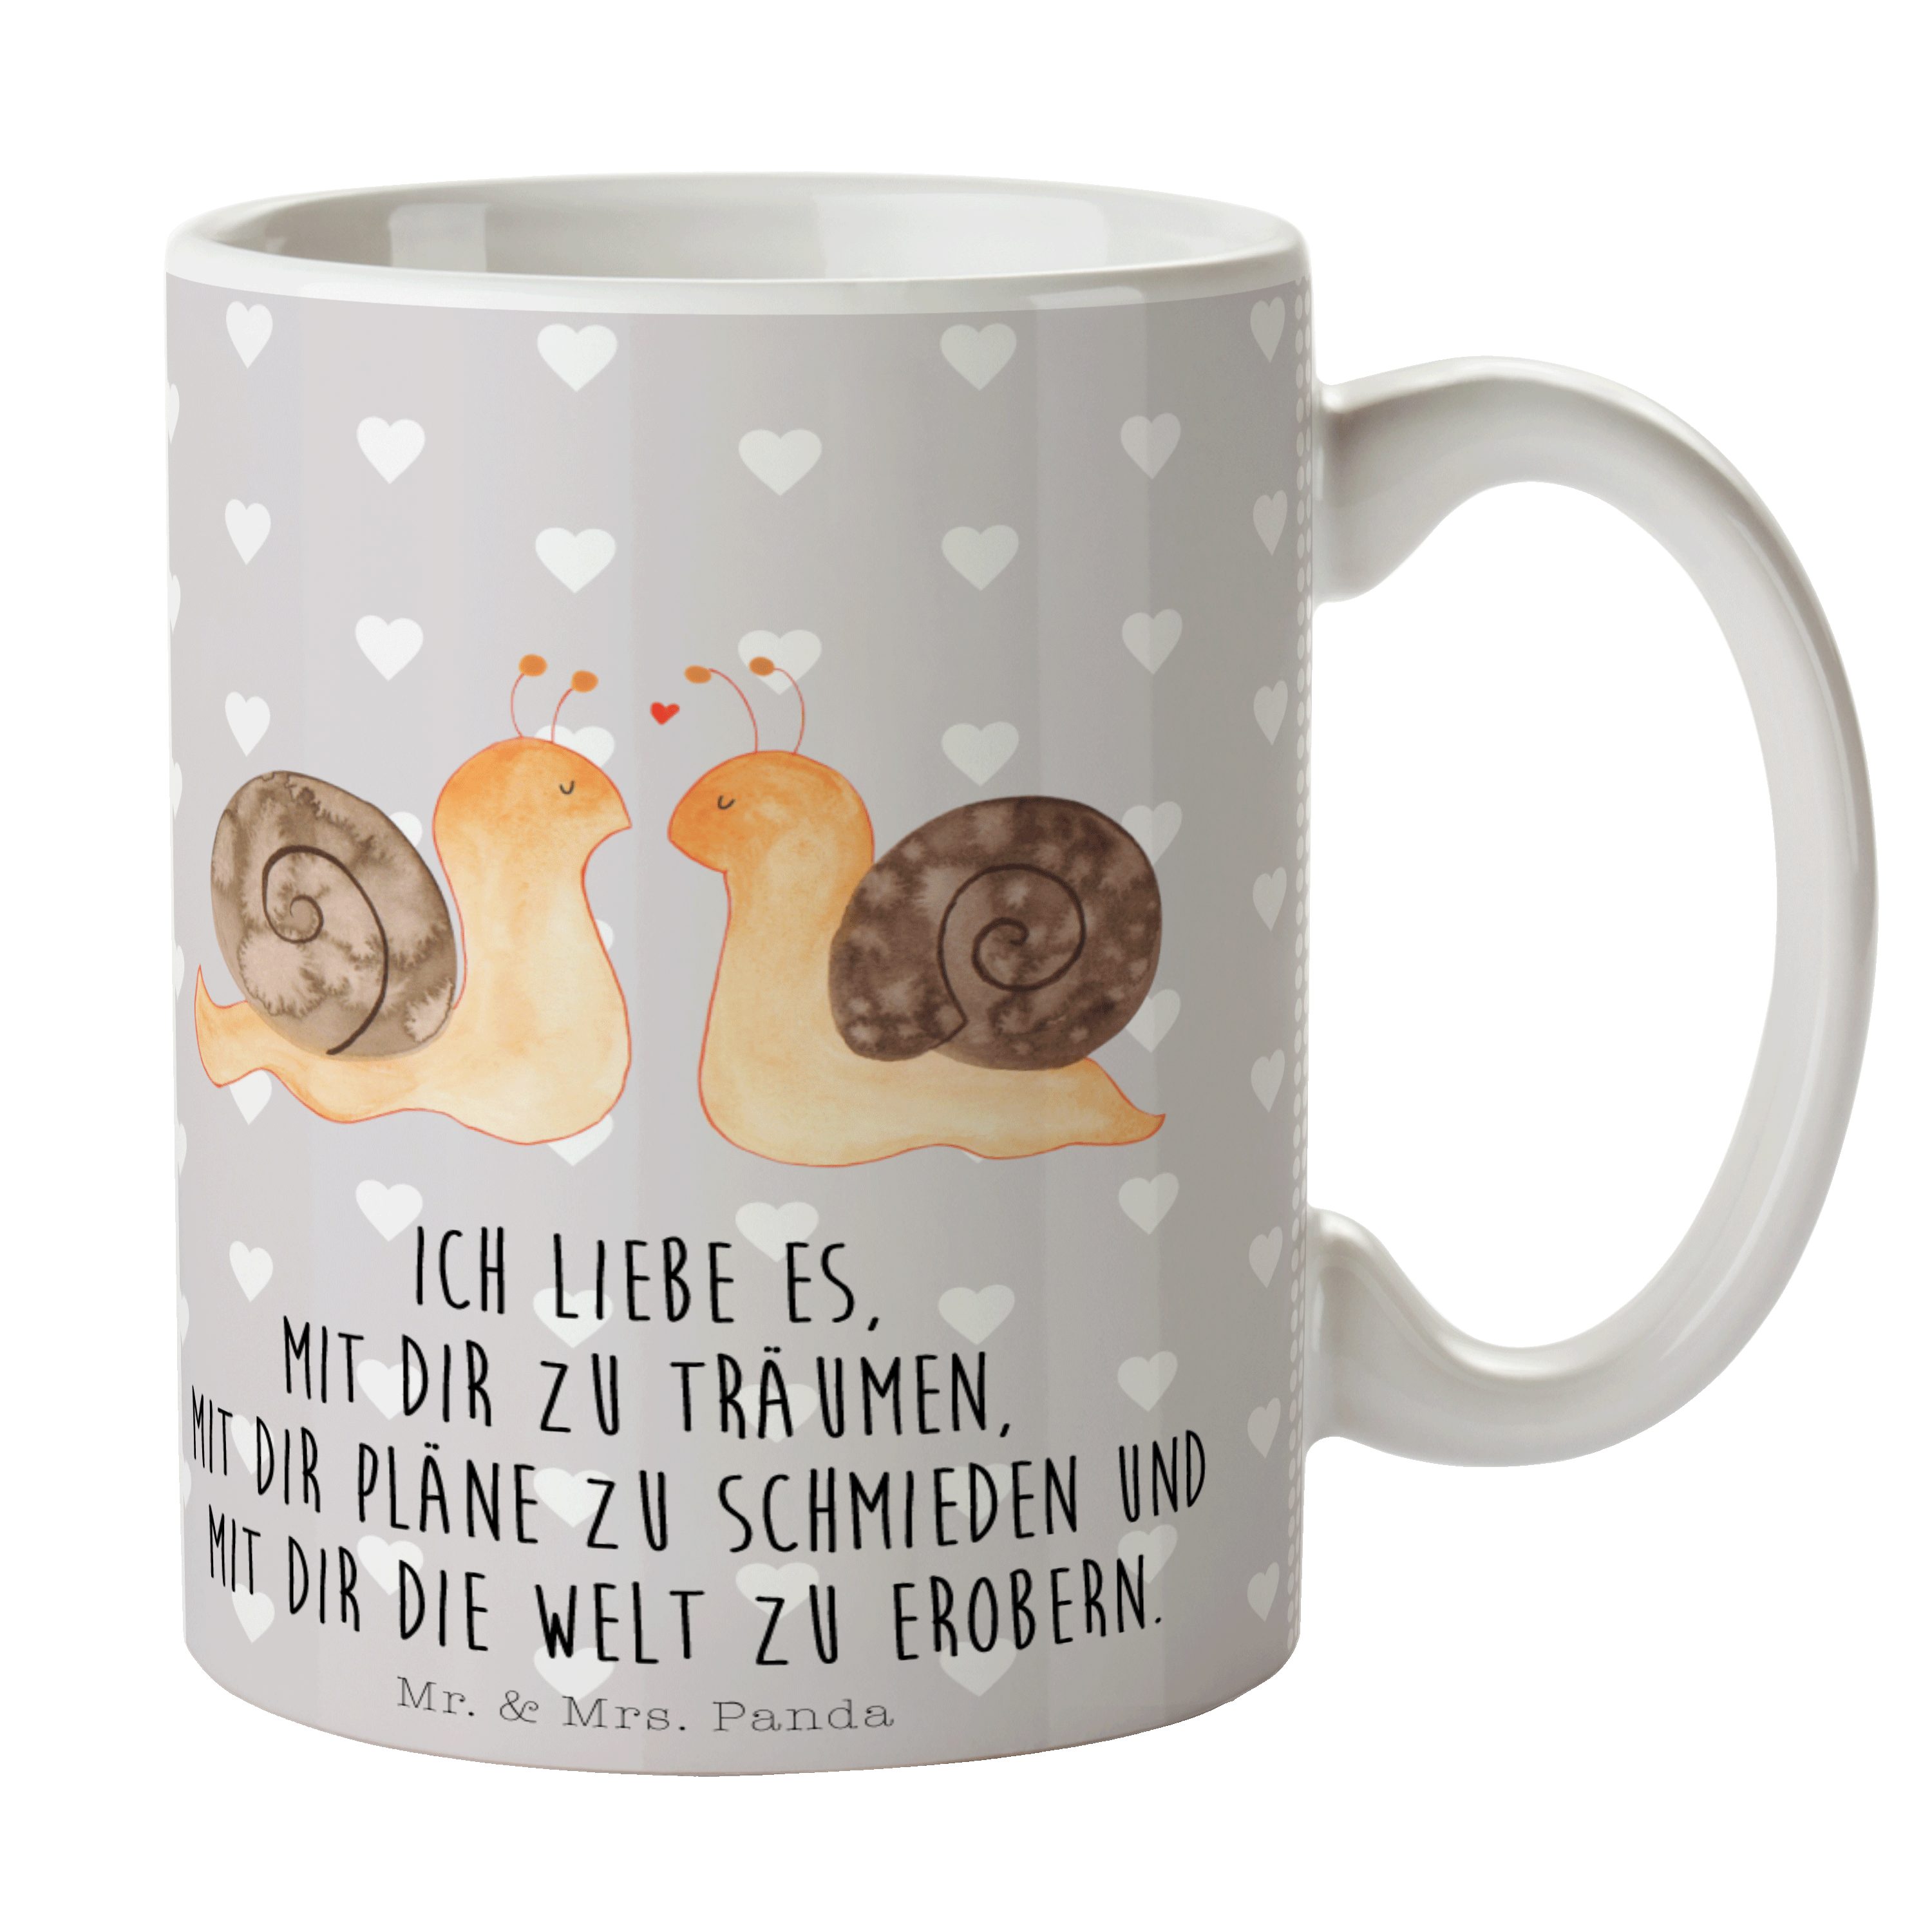 Mr. & Mrs. Panda Liebe - Paar, Sprüche, Tasse Grau Tasse, Geschenk, Tasse Keramik - Pastell Schnecken